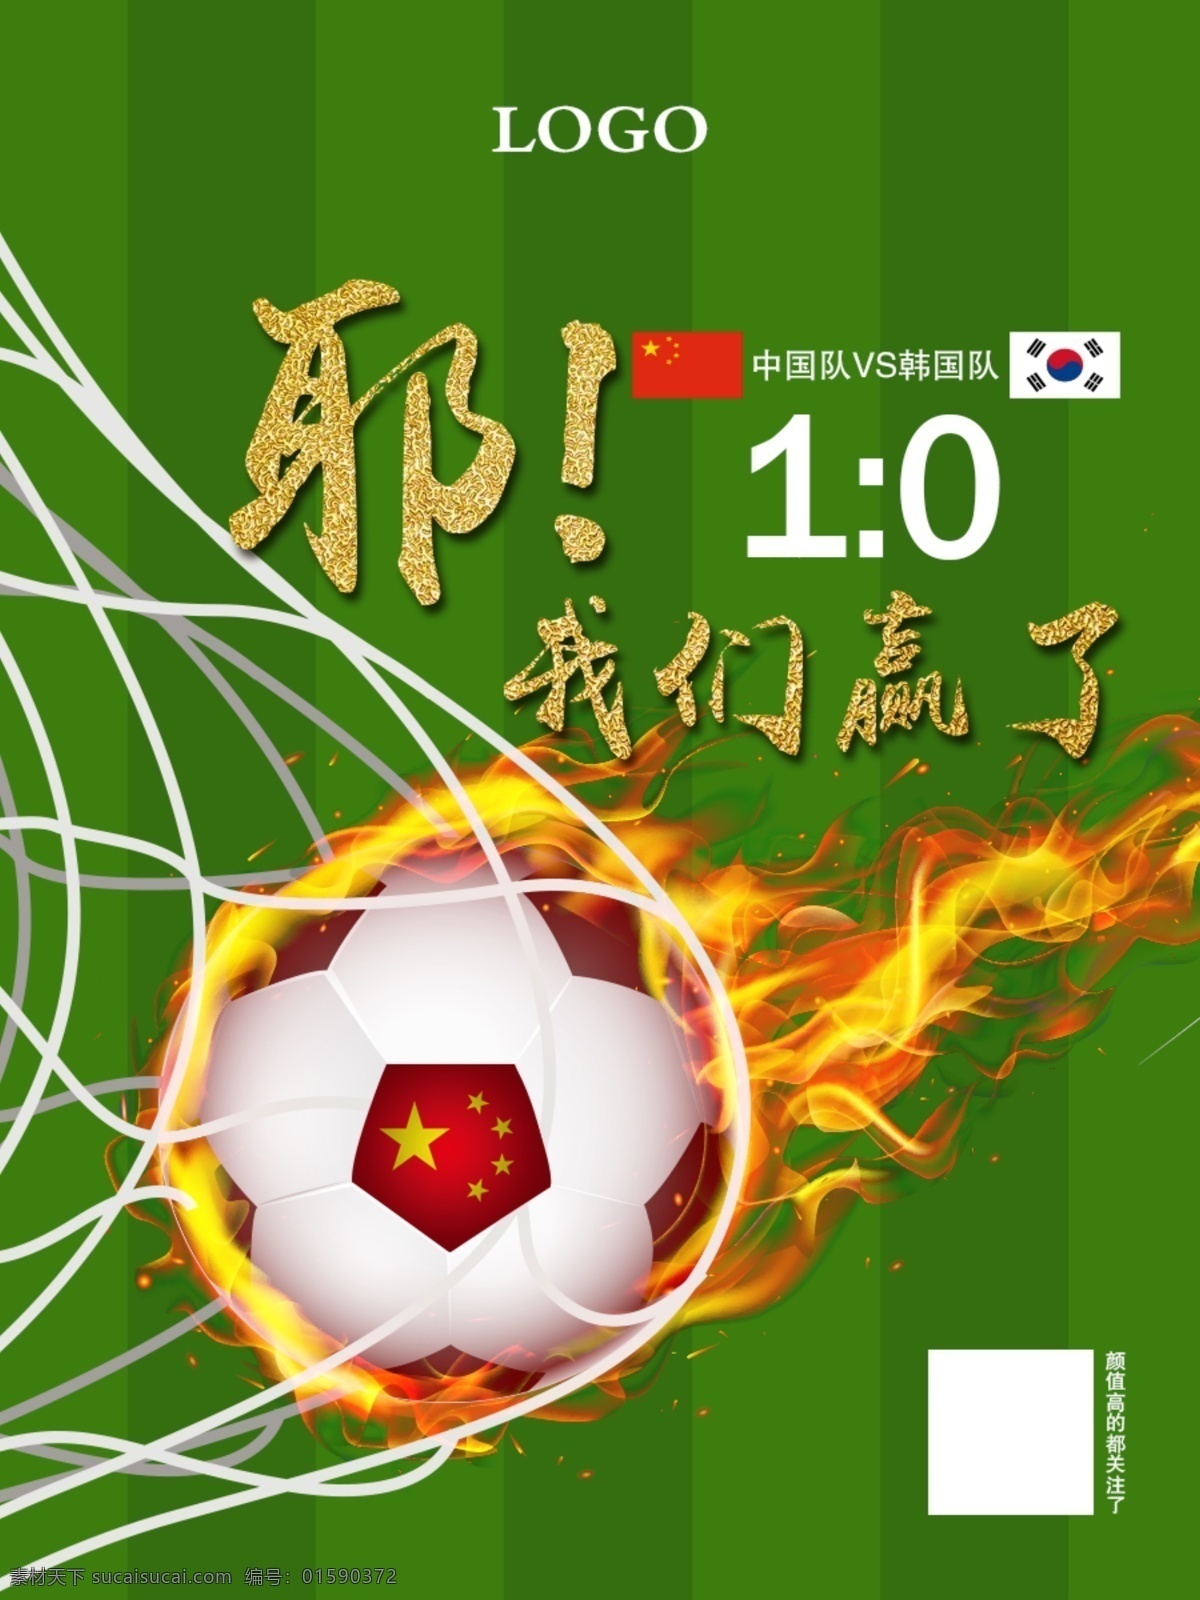 足球宣传海报 足球 着火 足球着火 球网 草地 足球场 中韩比赛 中国国旗 韩国国旗